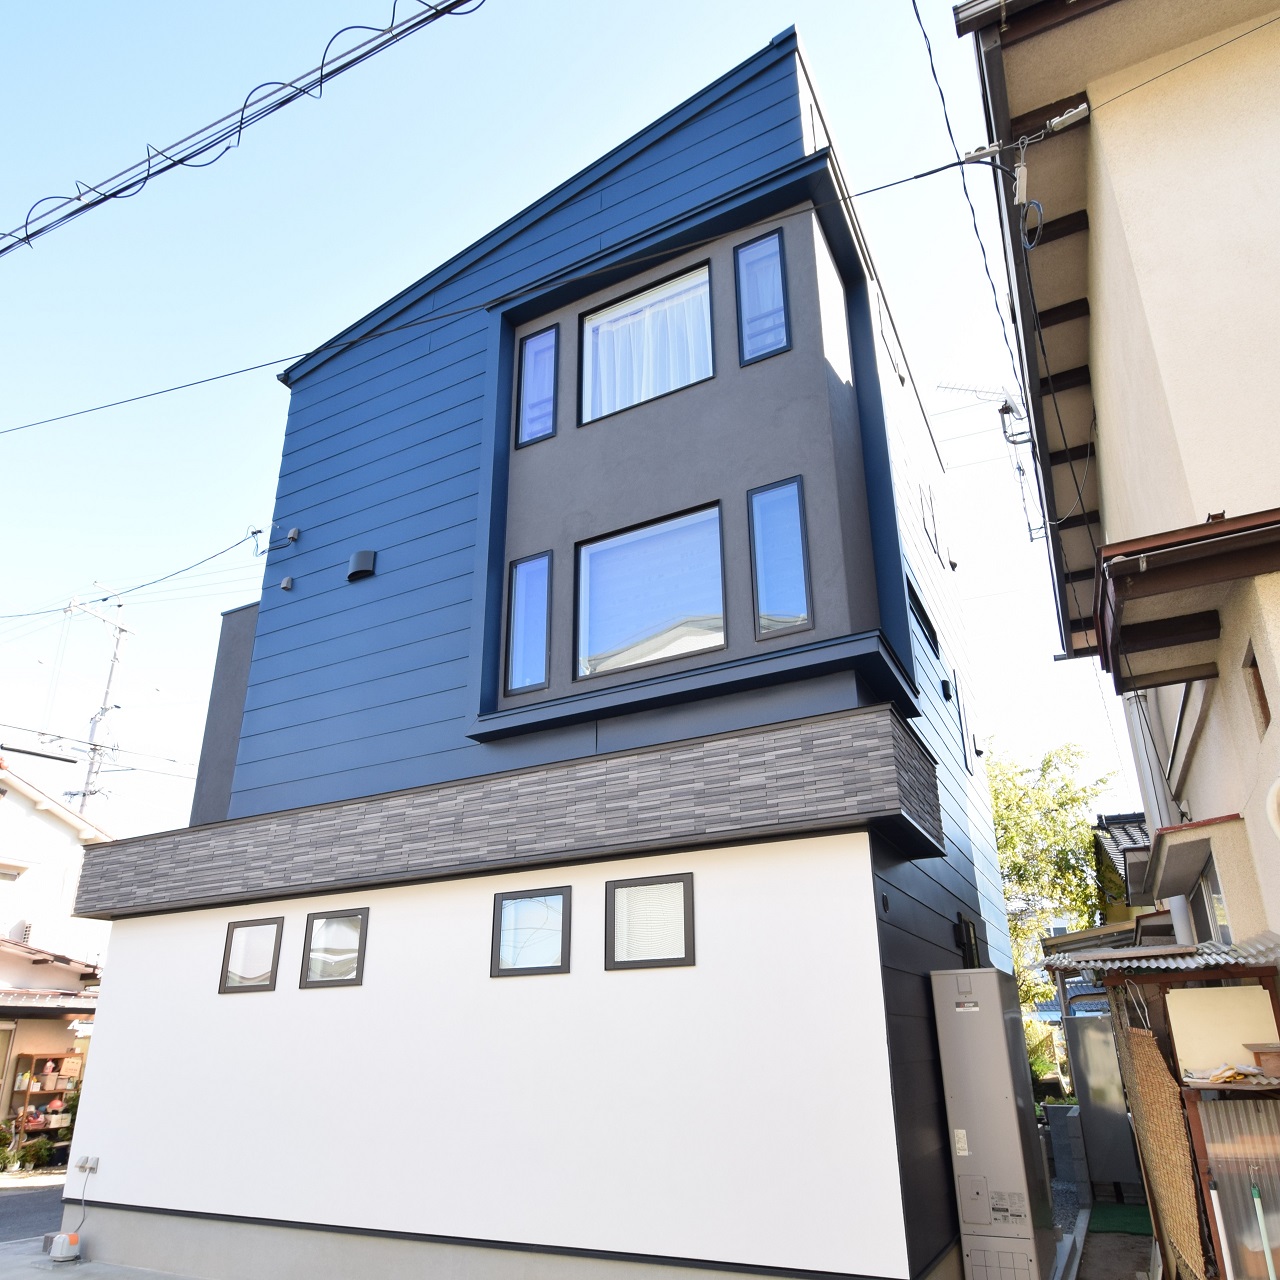 【デザインハウス】2階にリビングを設けた「デザインハウス×2世帯住宅」